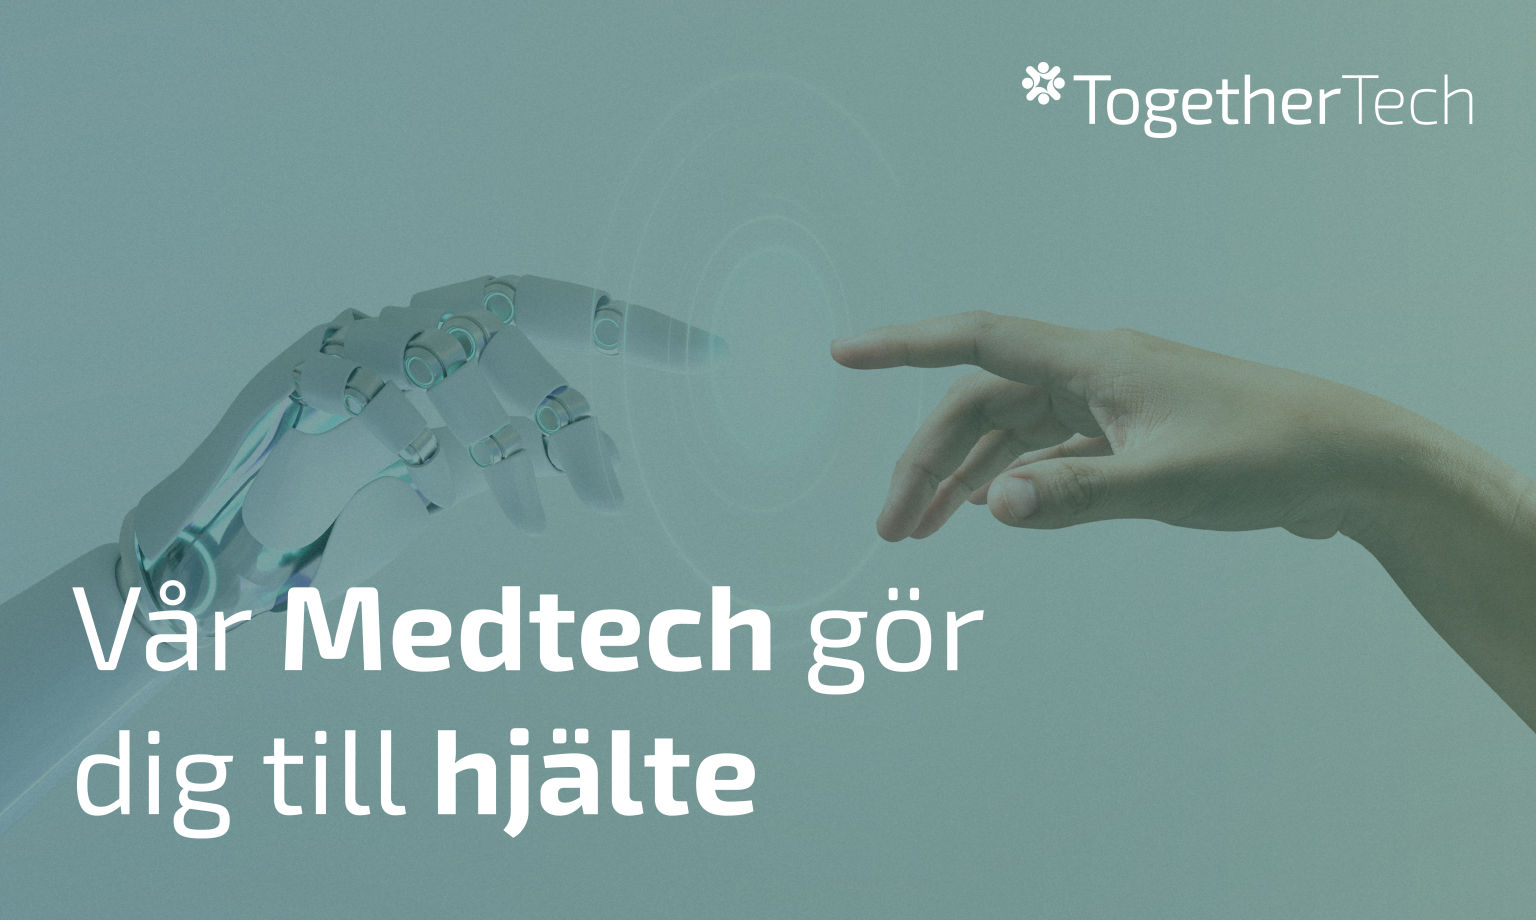 Annons "Medtech" för Together Tech.